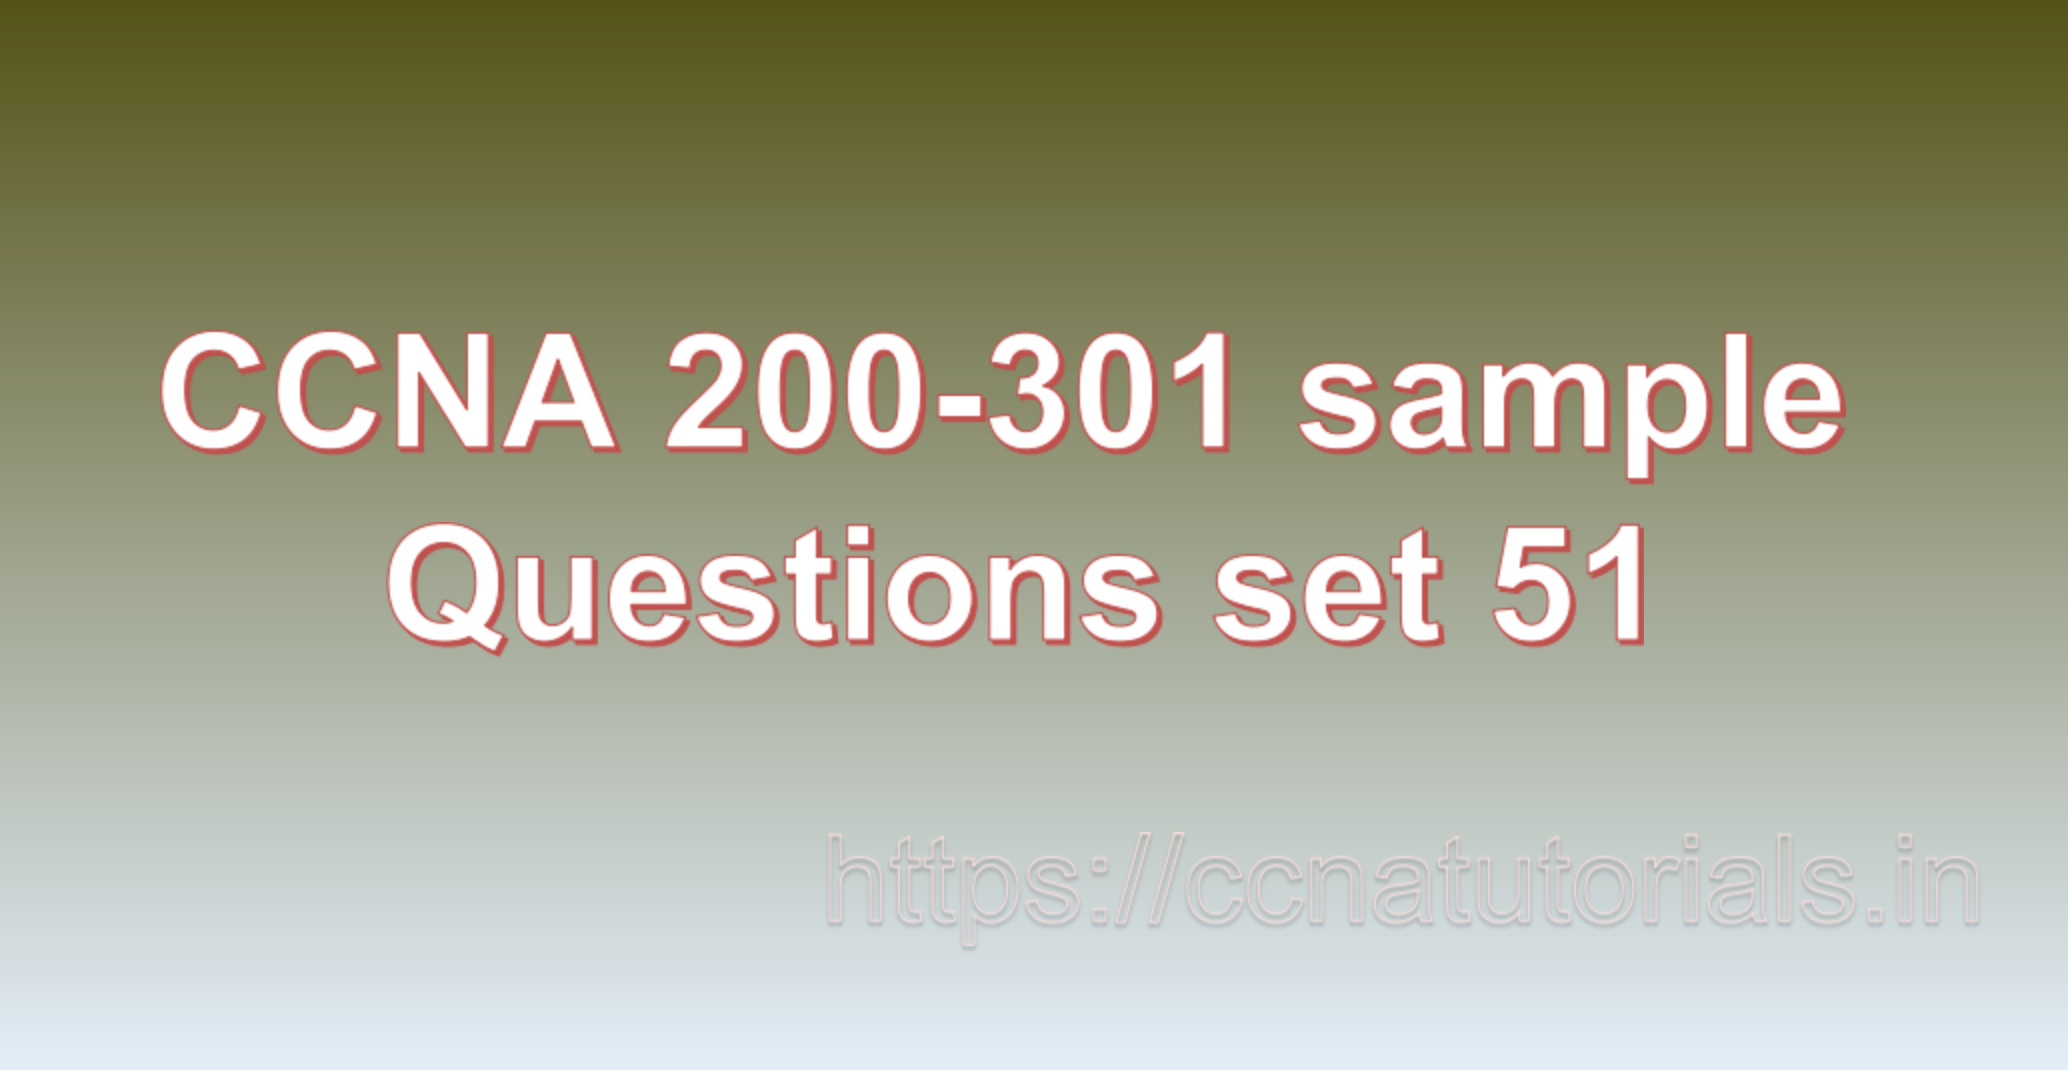 ccna sample questions set 51, ccna tutorials, CCNA Exam, ccna